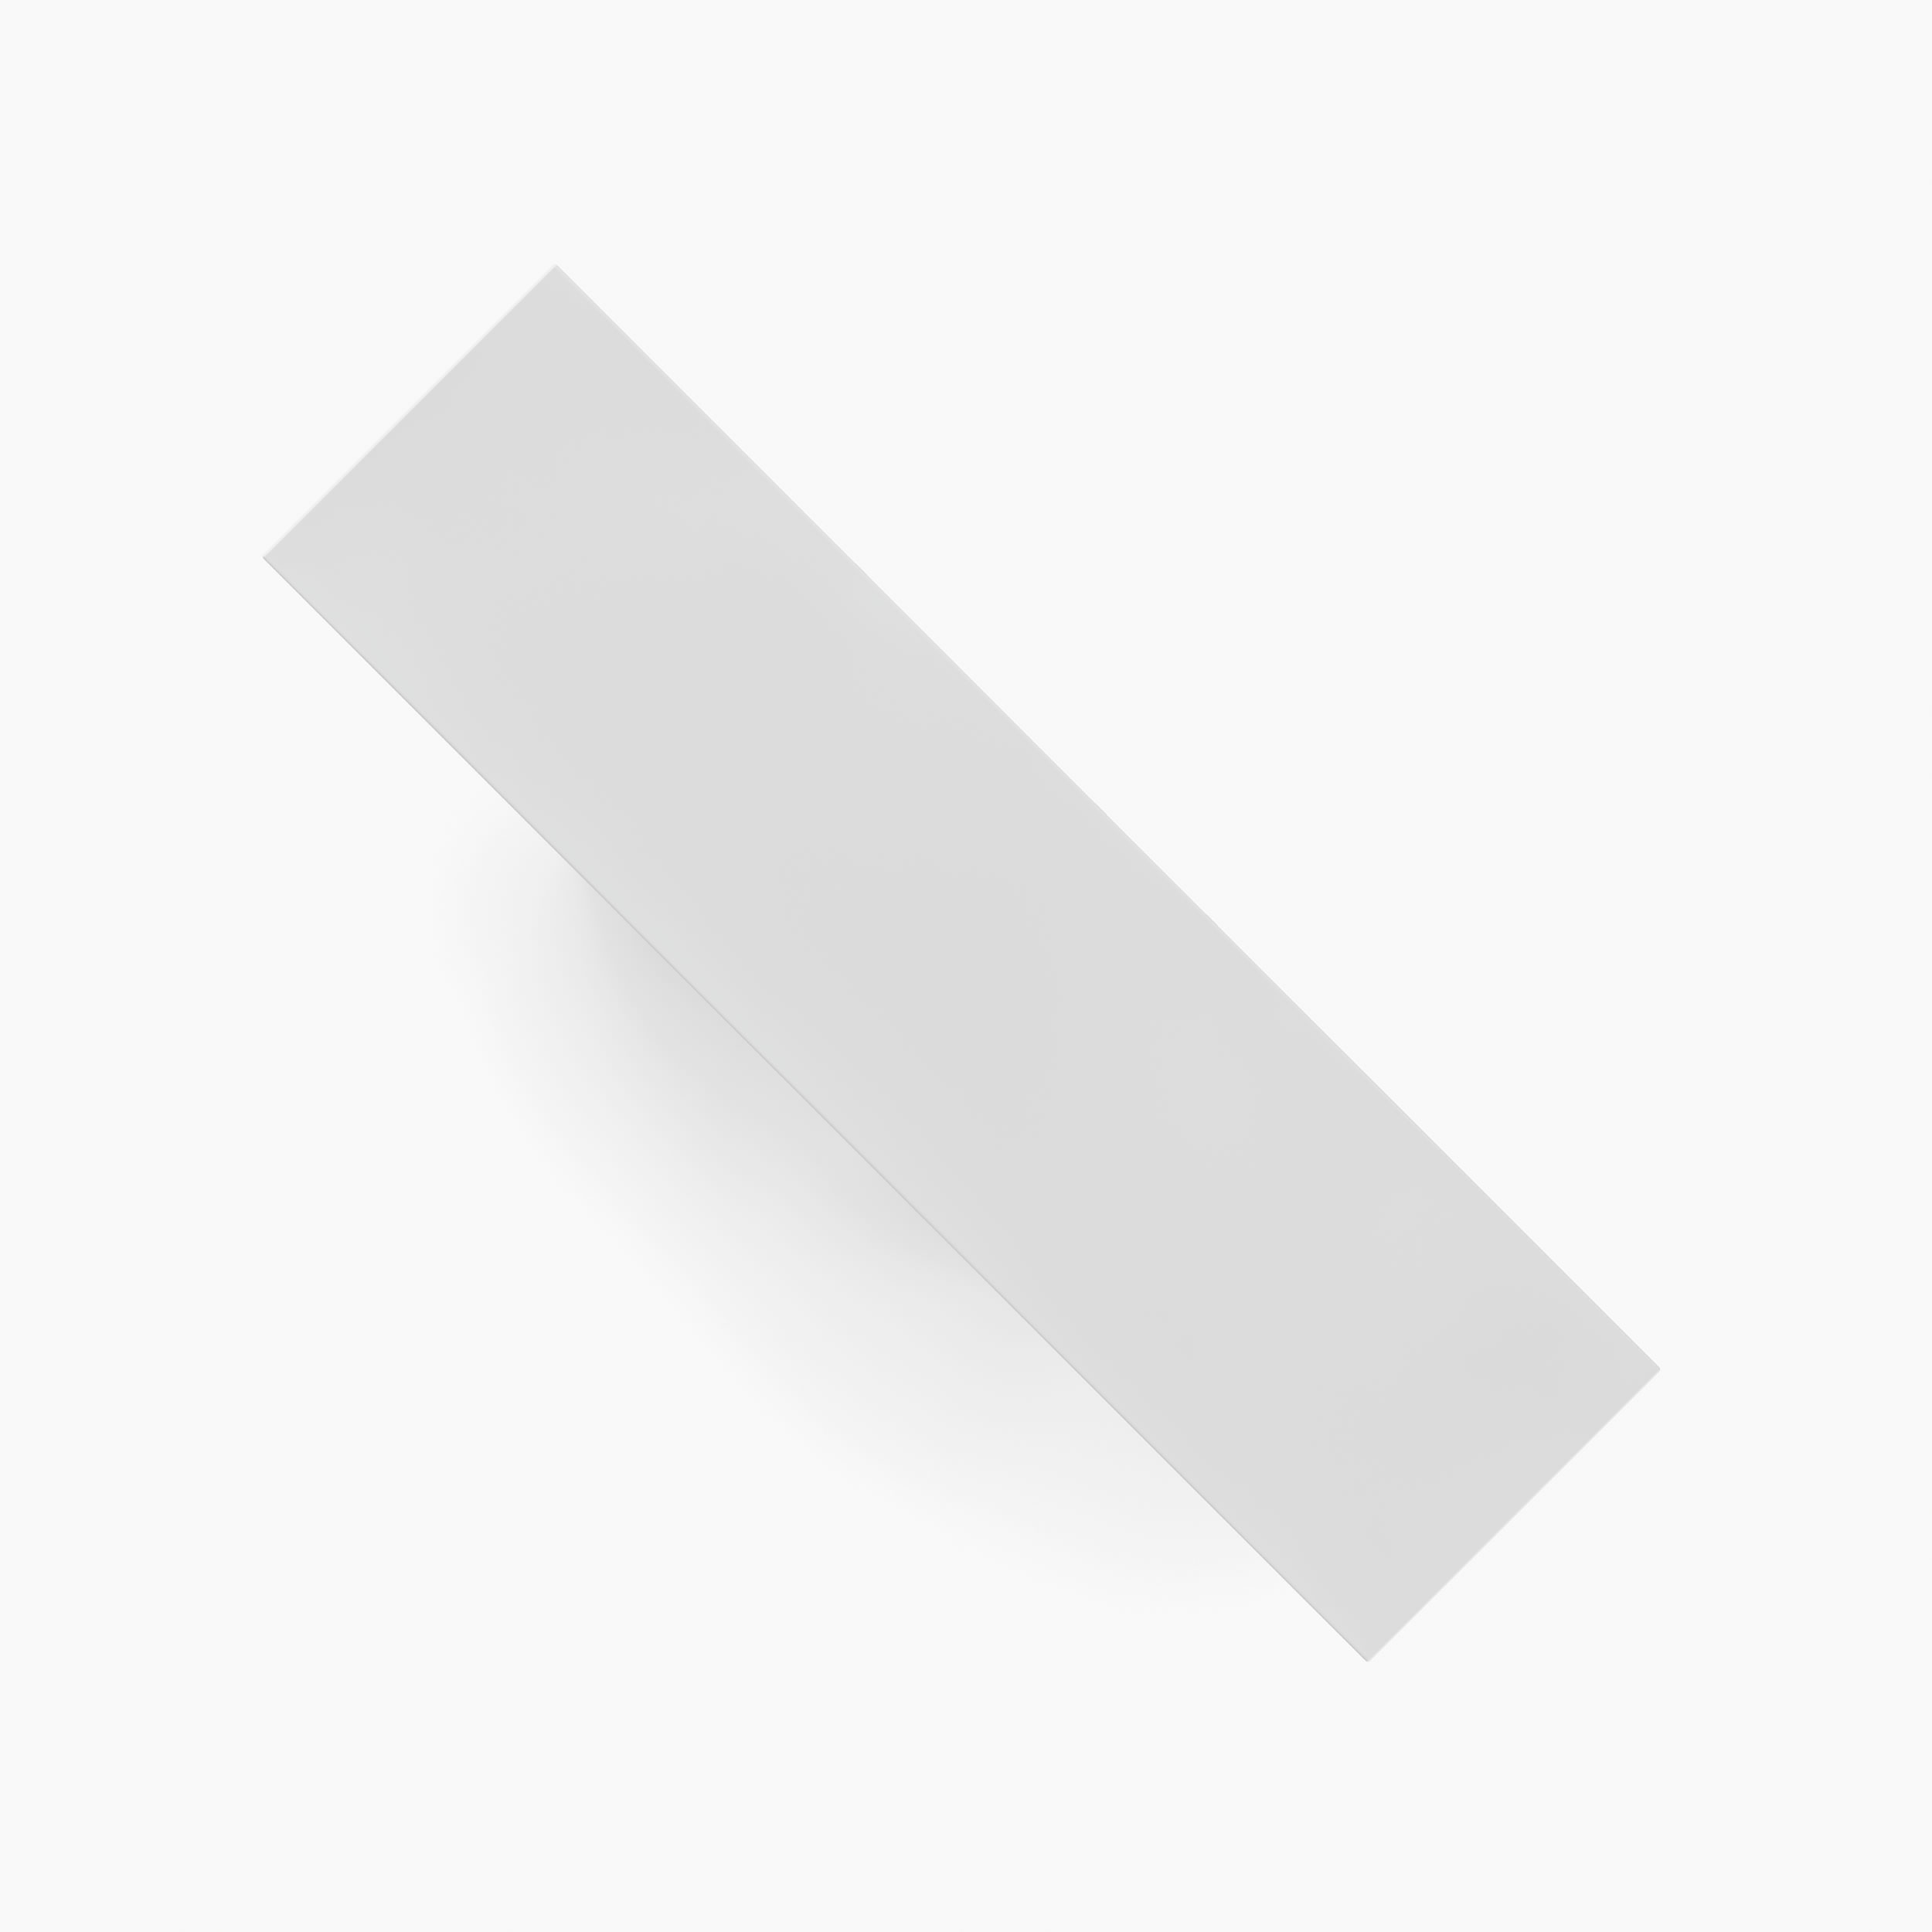 Sideboard wuerfel prisma zylinder weiss white spaces Buero collectible design Sideboards FS 13 FELIX SCHWAKE